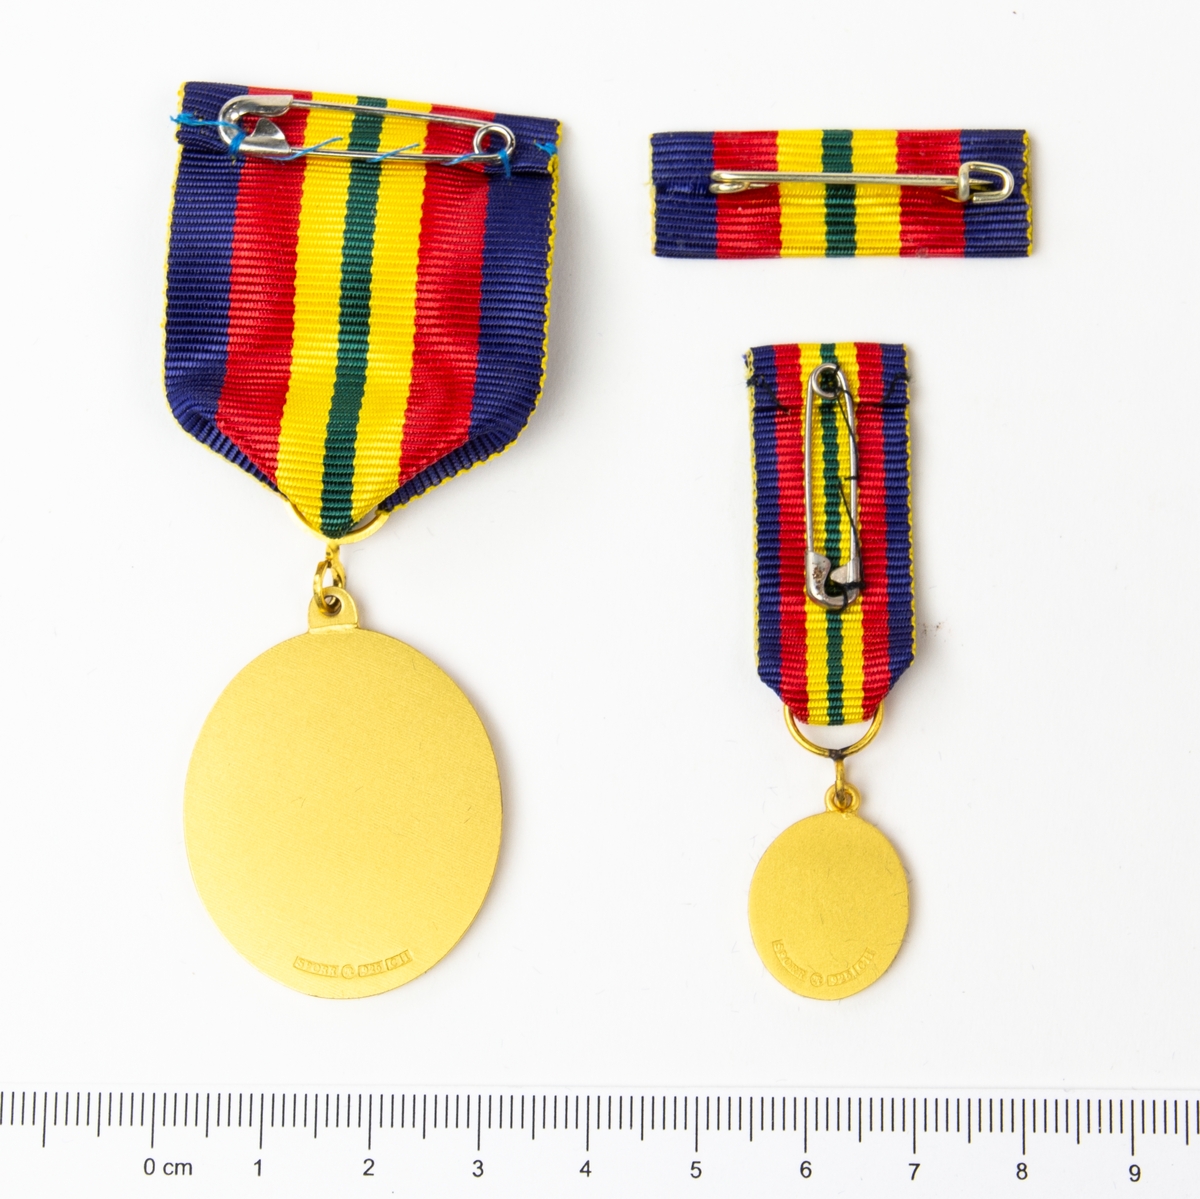 2 st medaljer och 1 st utmärkelsetecken. Framsida med lagerkrans, svärd och heraldiskt vapen. Förvaras i originalask.